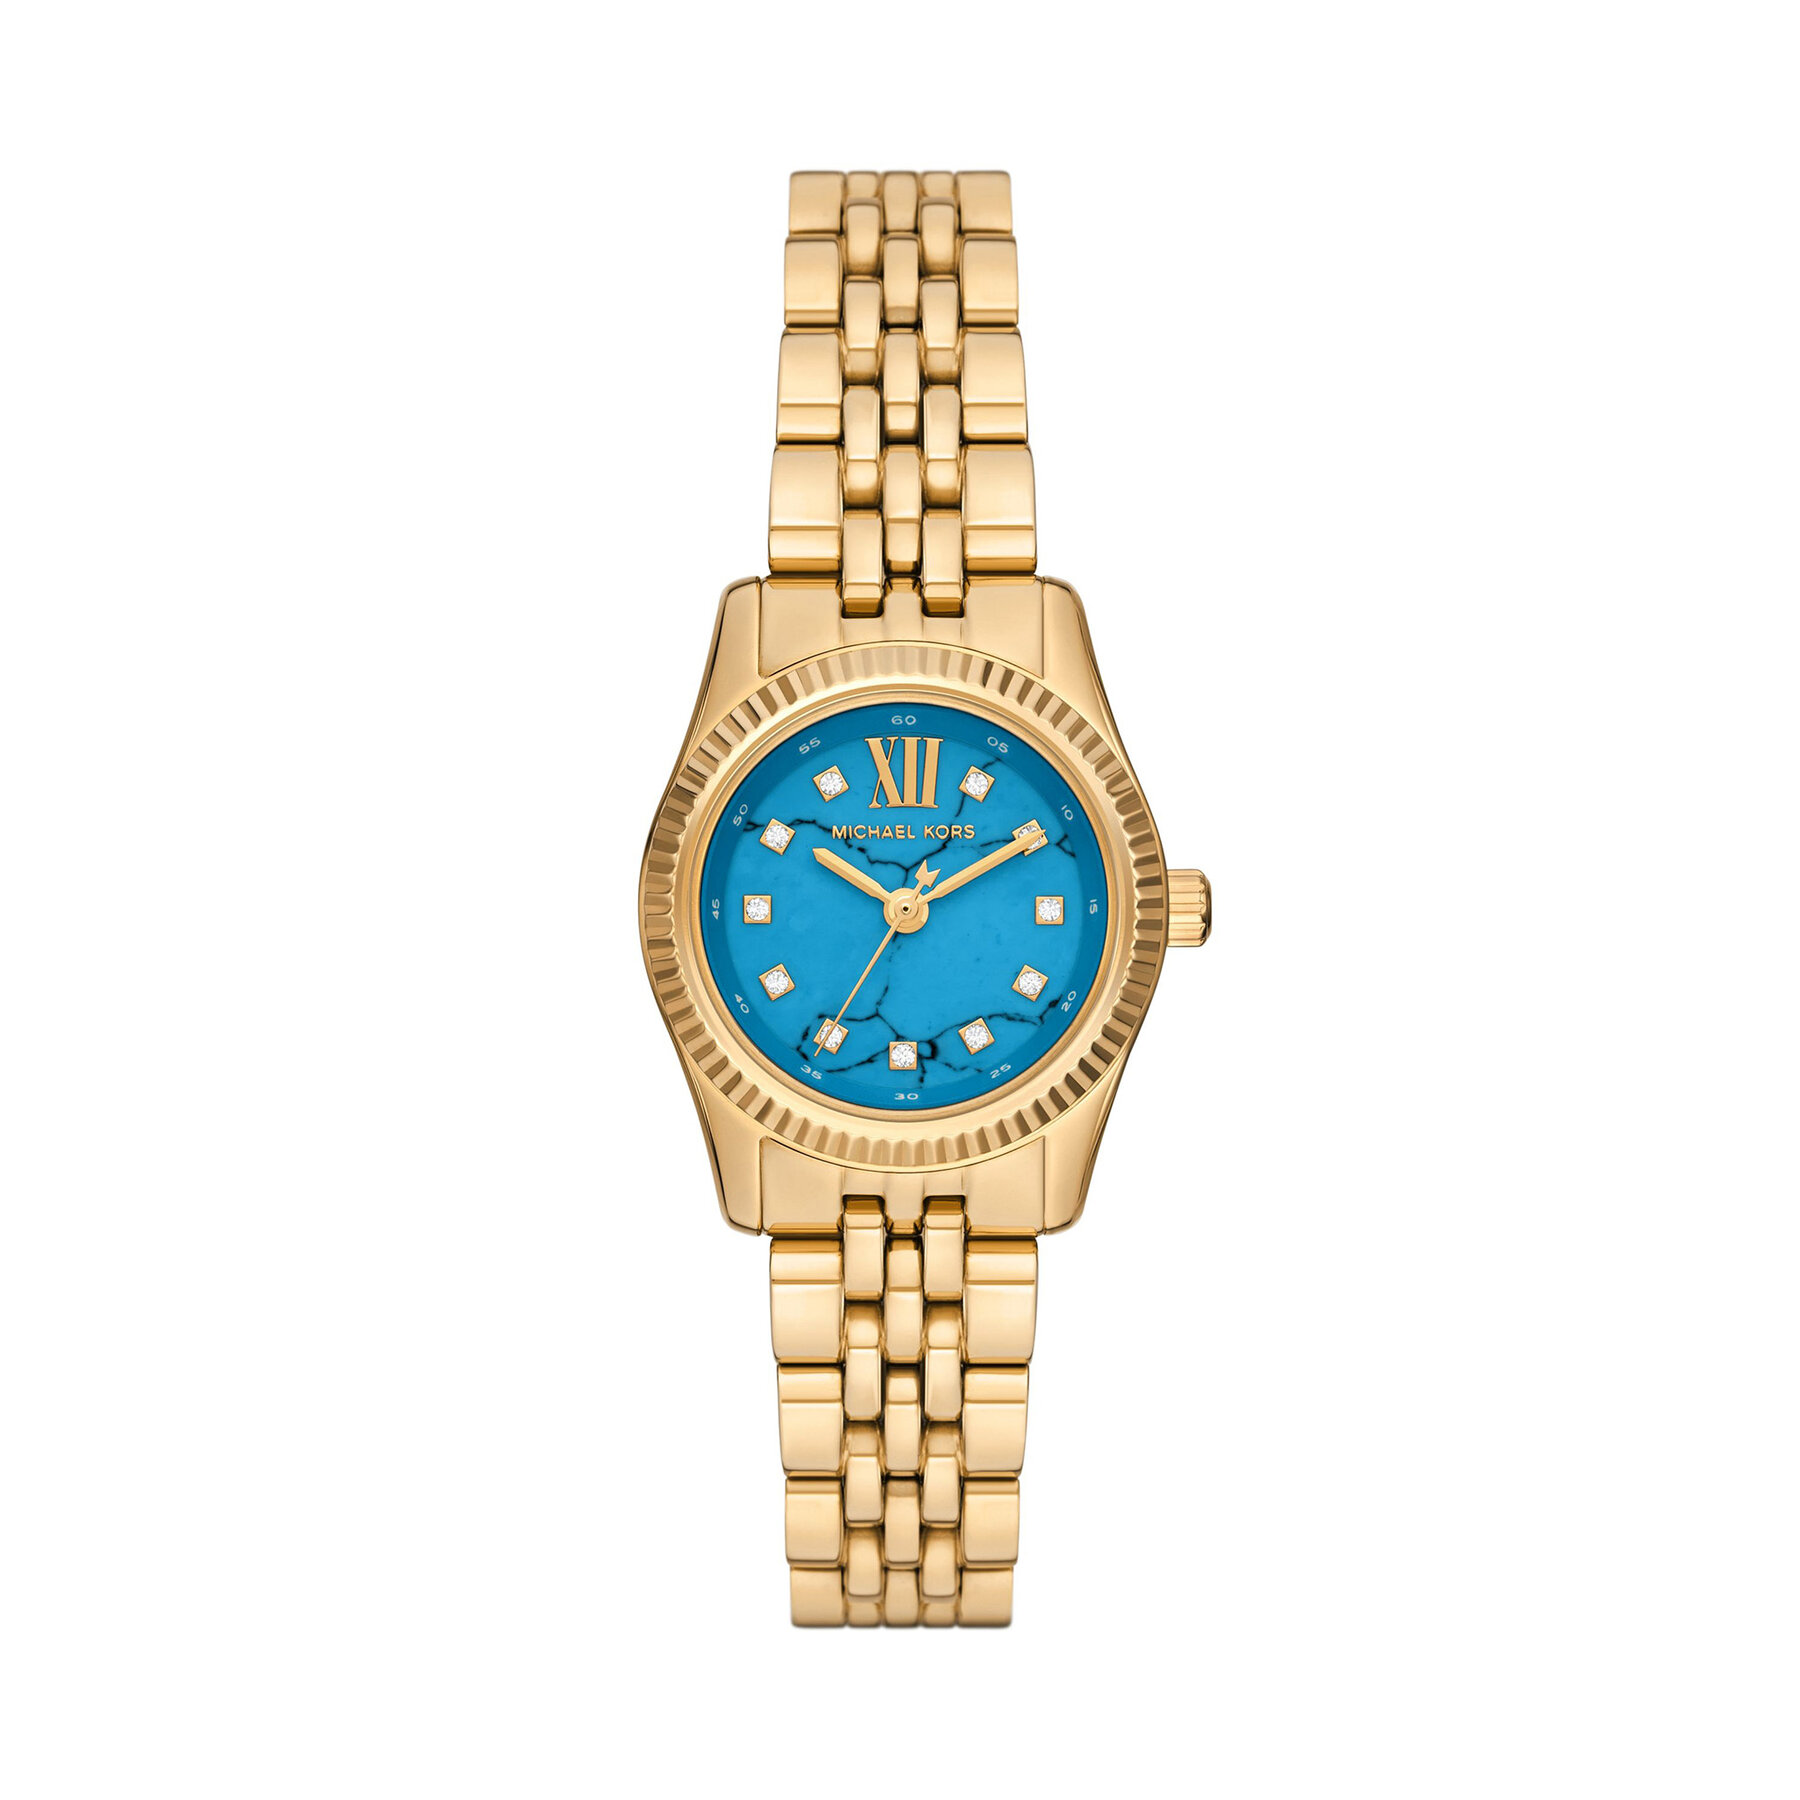 Ρολόι Michael Kors Lexington MK4813 Χρυσό